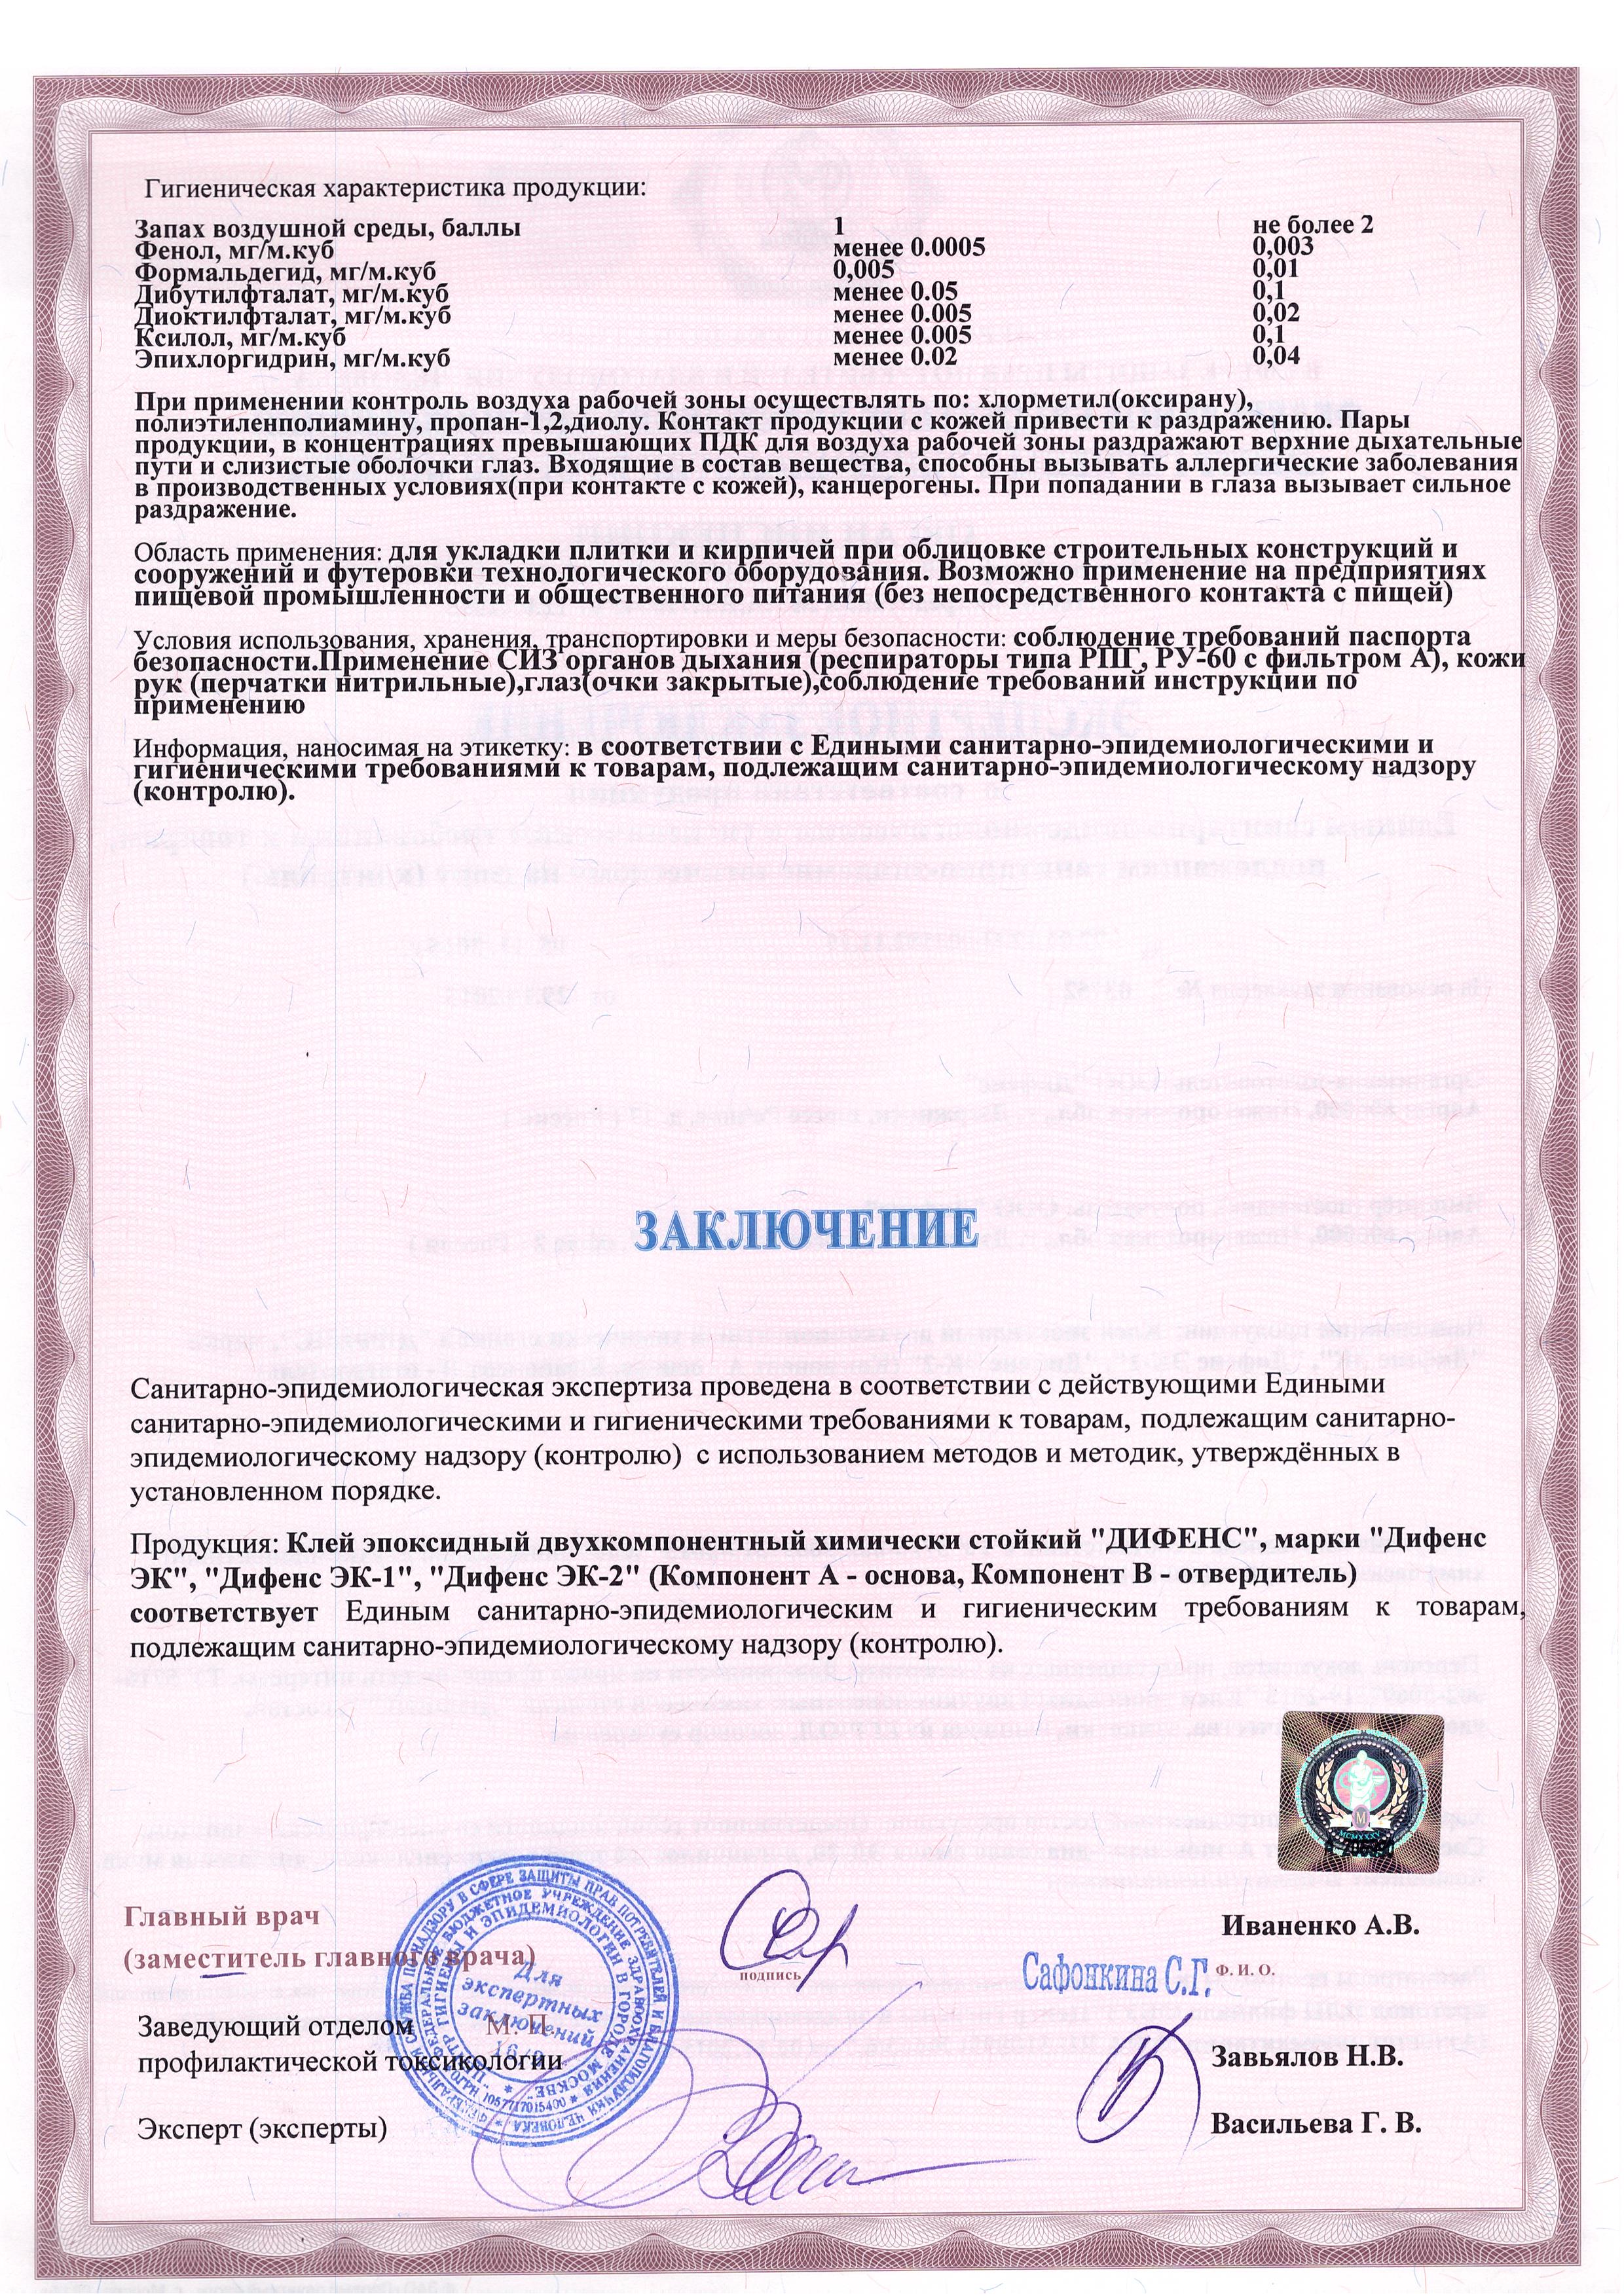 Сертификат соответствия ООО 